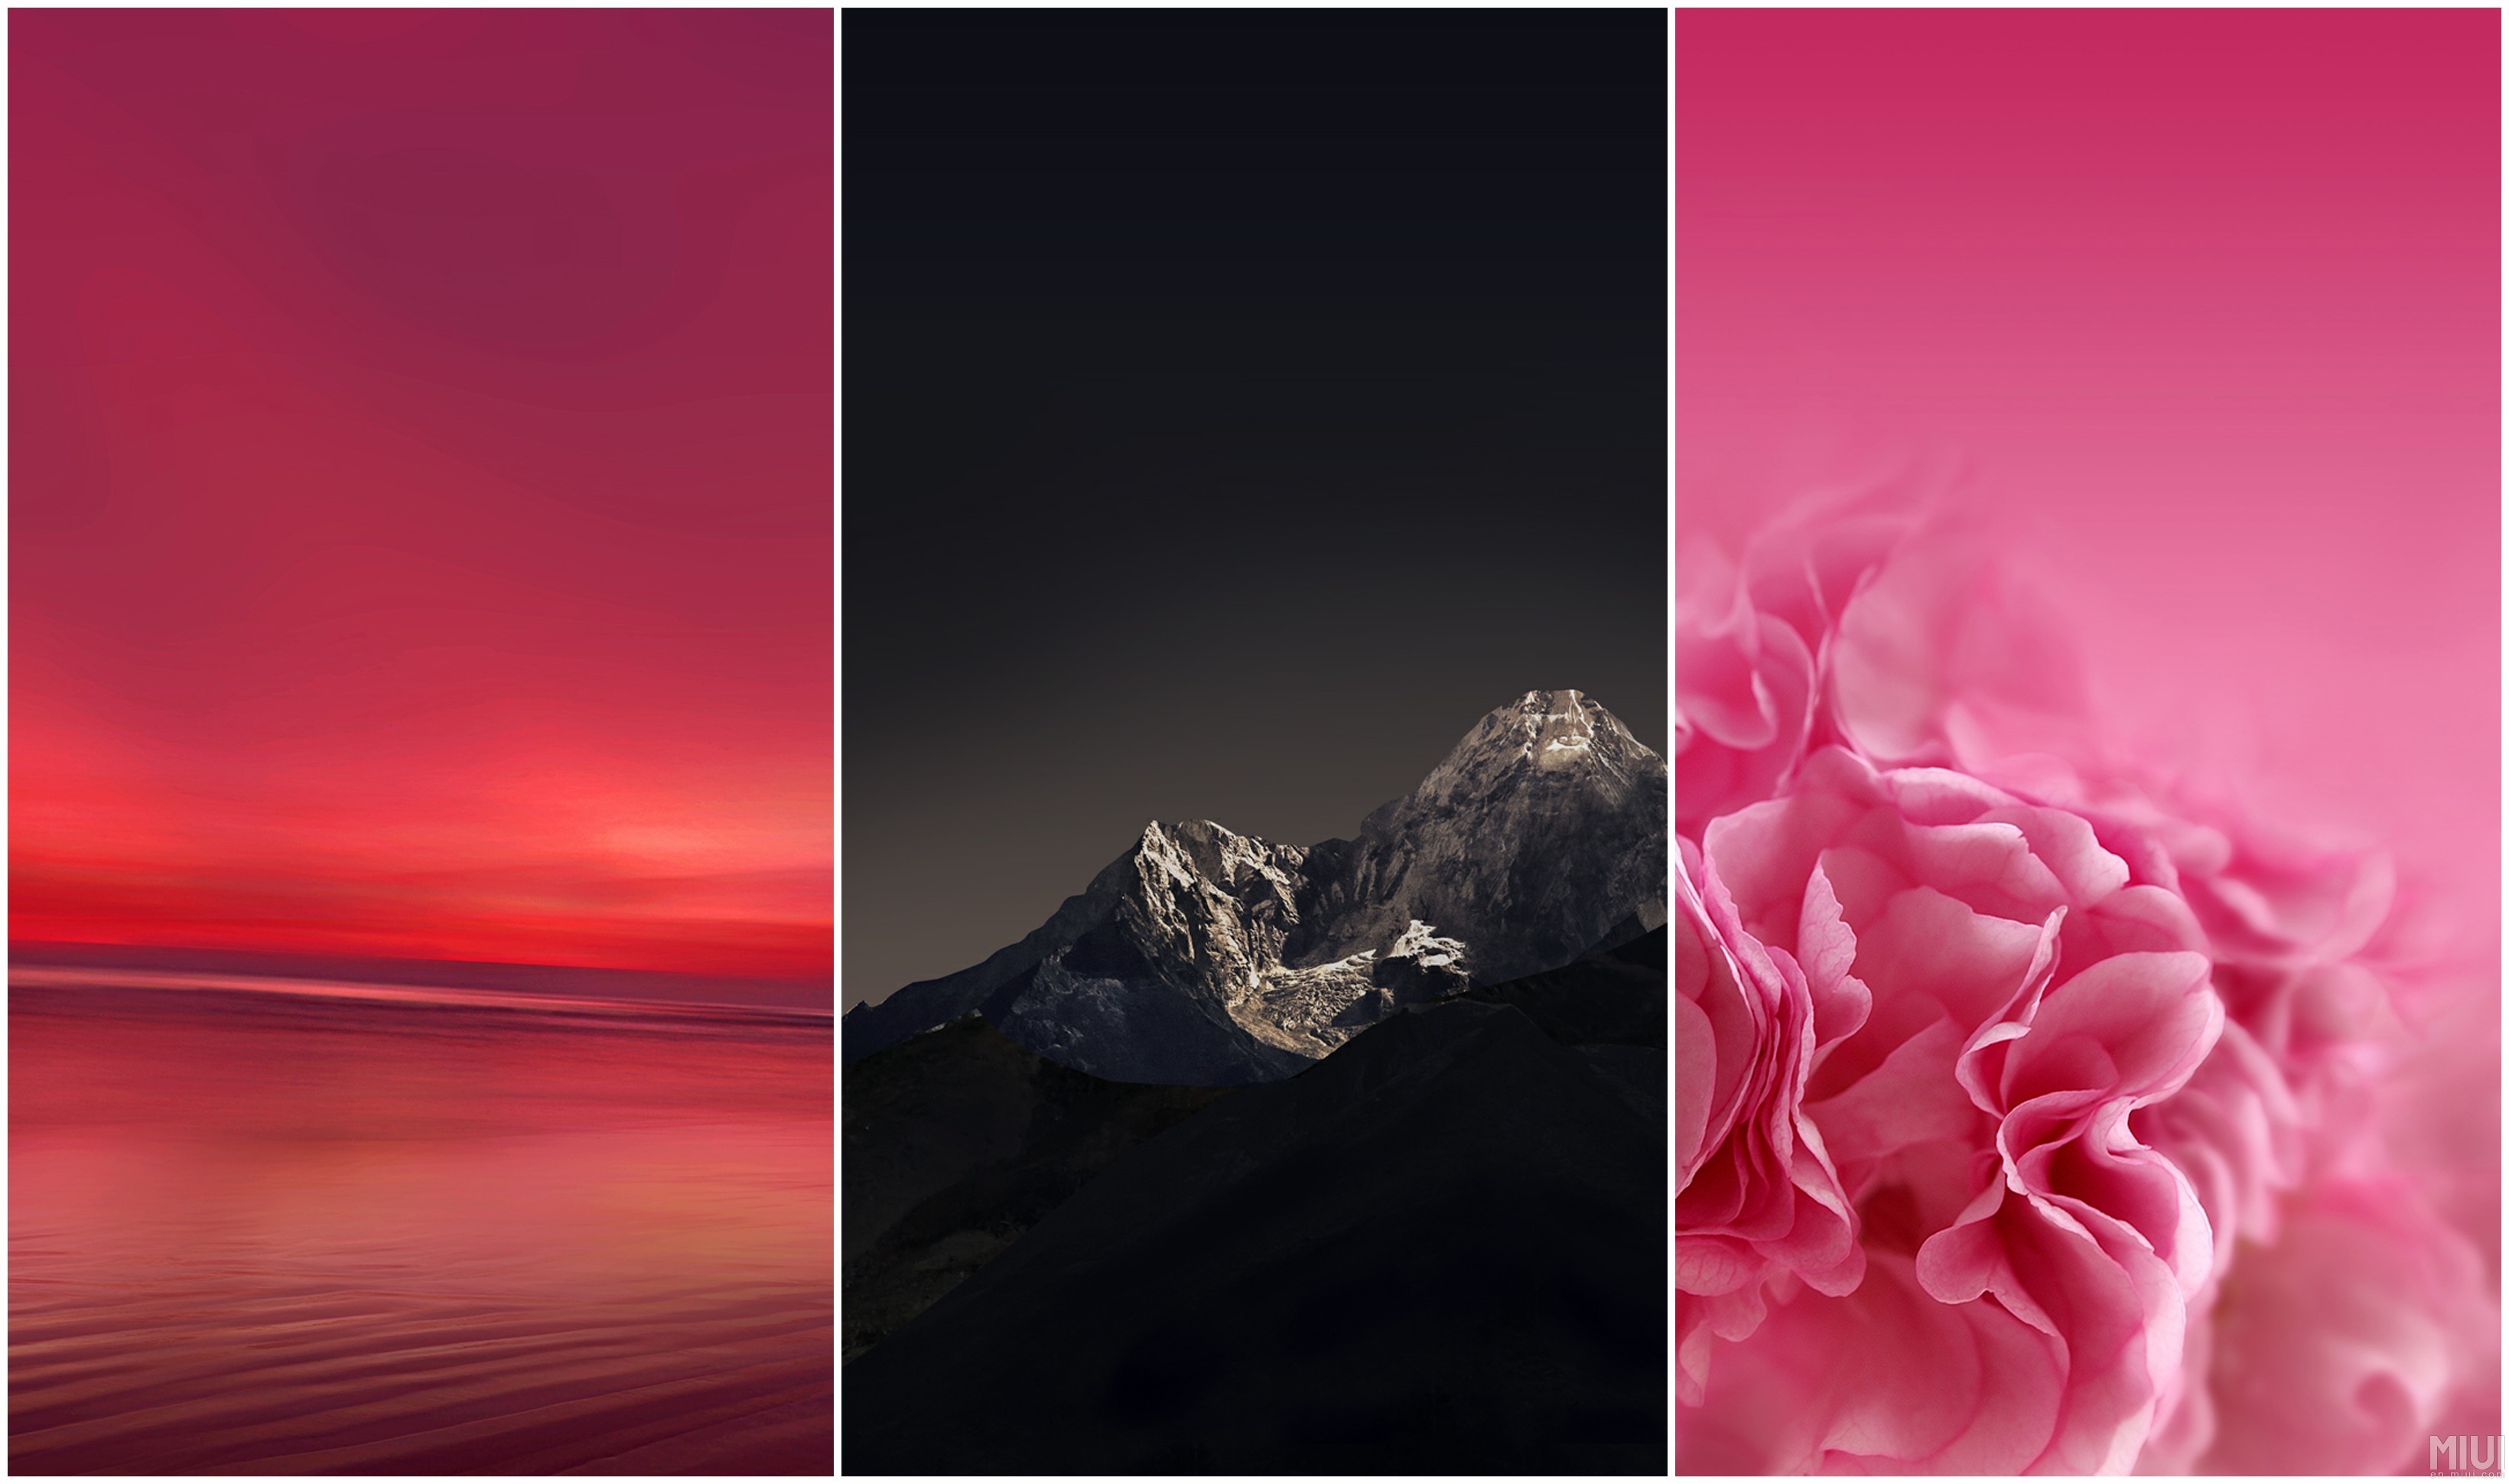 asus zenfone 2 laser wallpaper,pink,red,sky,magenta,graphic design